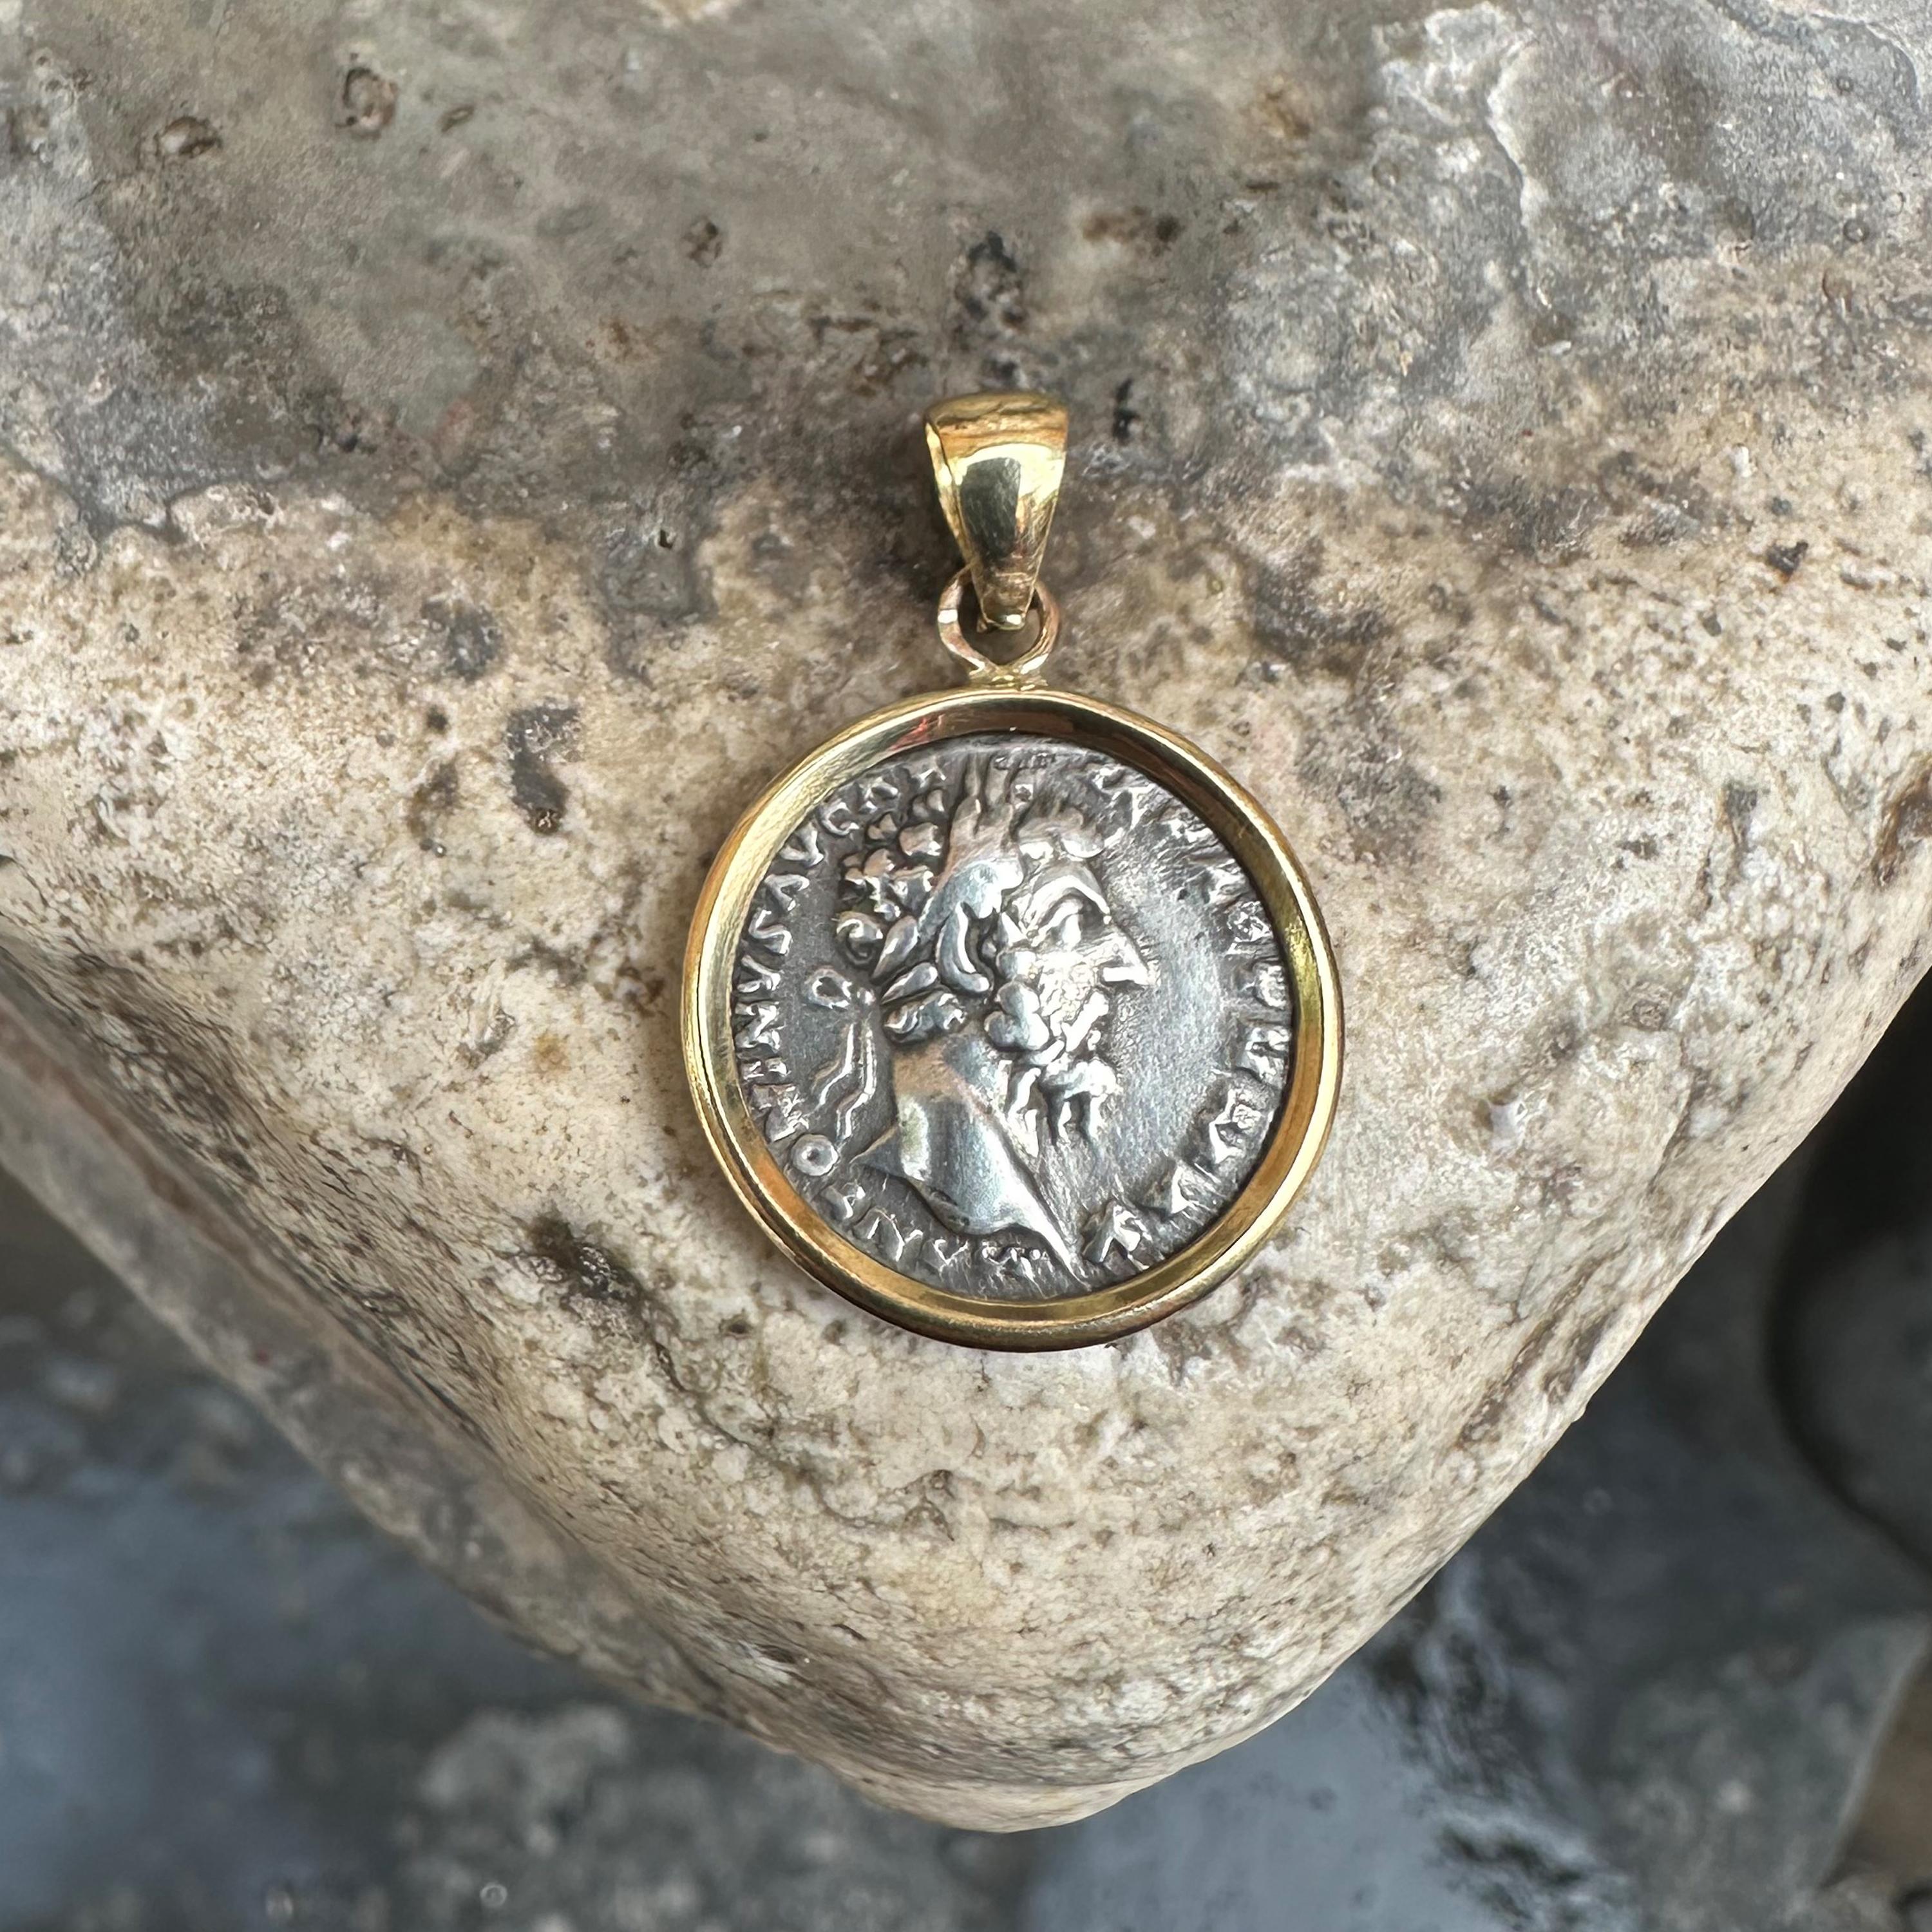 <p>Dieser exquisite Anhänger zeigt eine römische Originalmünze aus dem 2. Jahrhundert n. Chr., auf der Kaiser Marcus Aurelius abgebildet ist. Die aus 18-karätigem Gold gefertigte Münze ist ein Beweis für die zeitlose Schönheit und historische